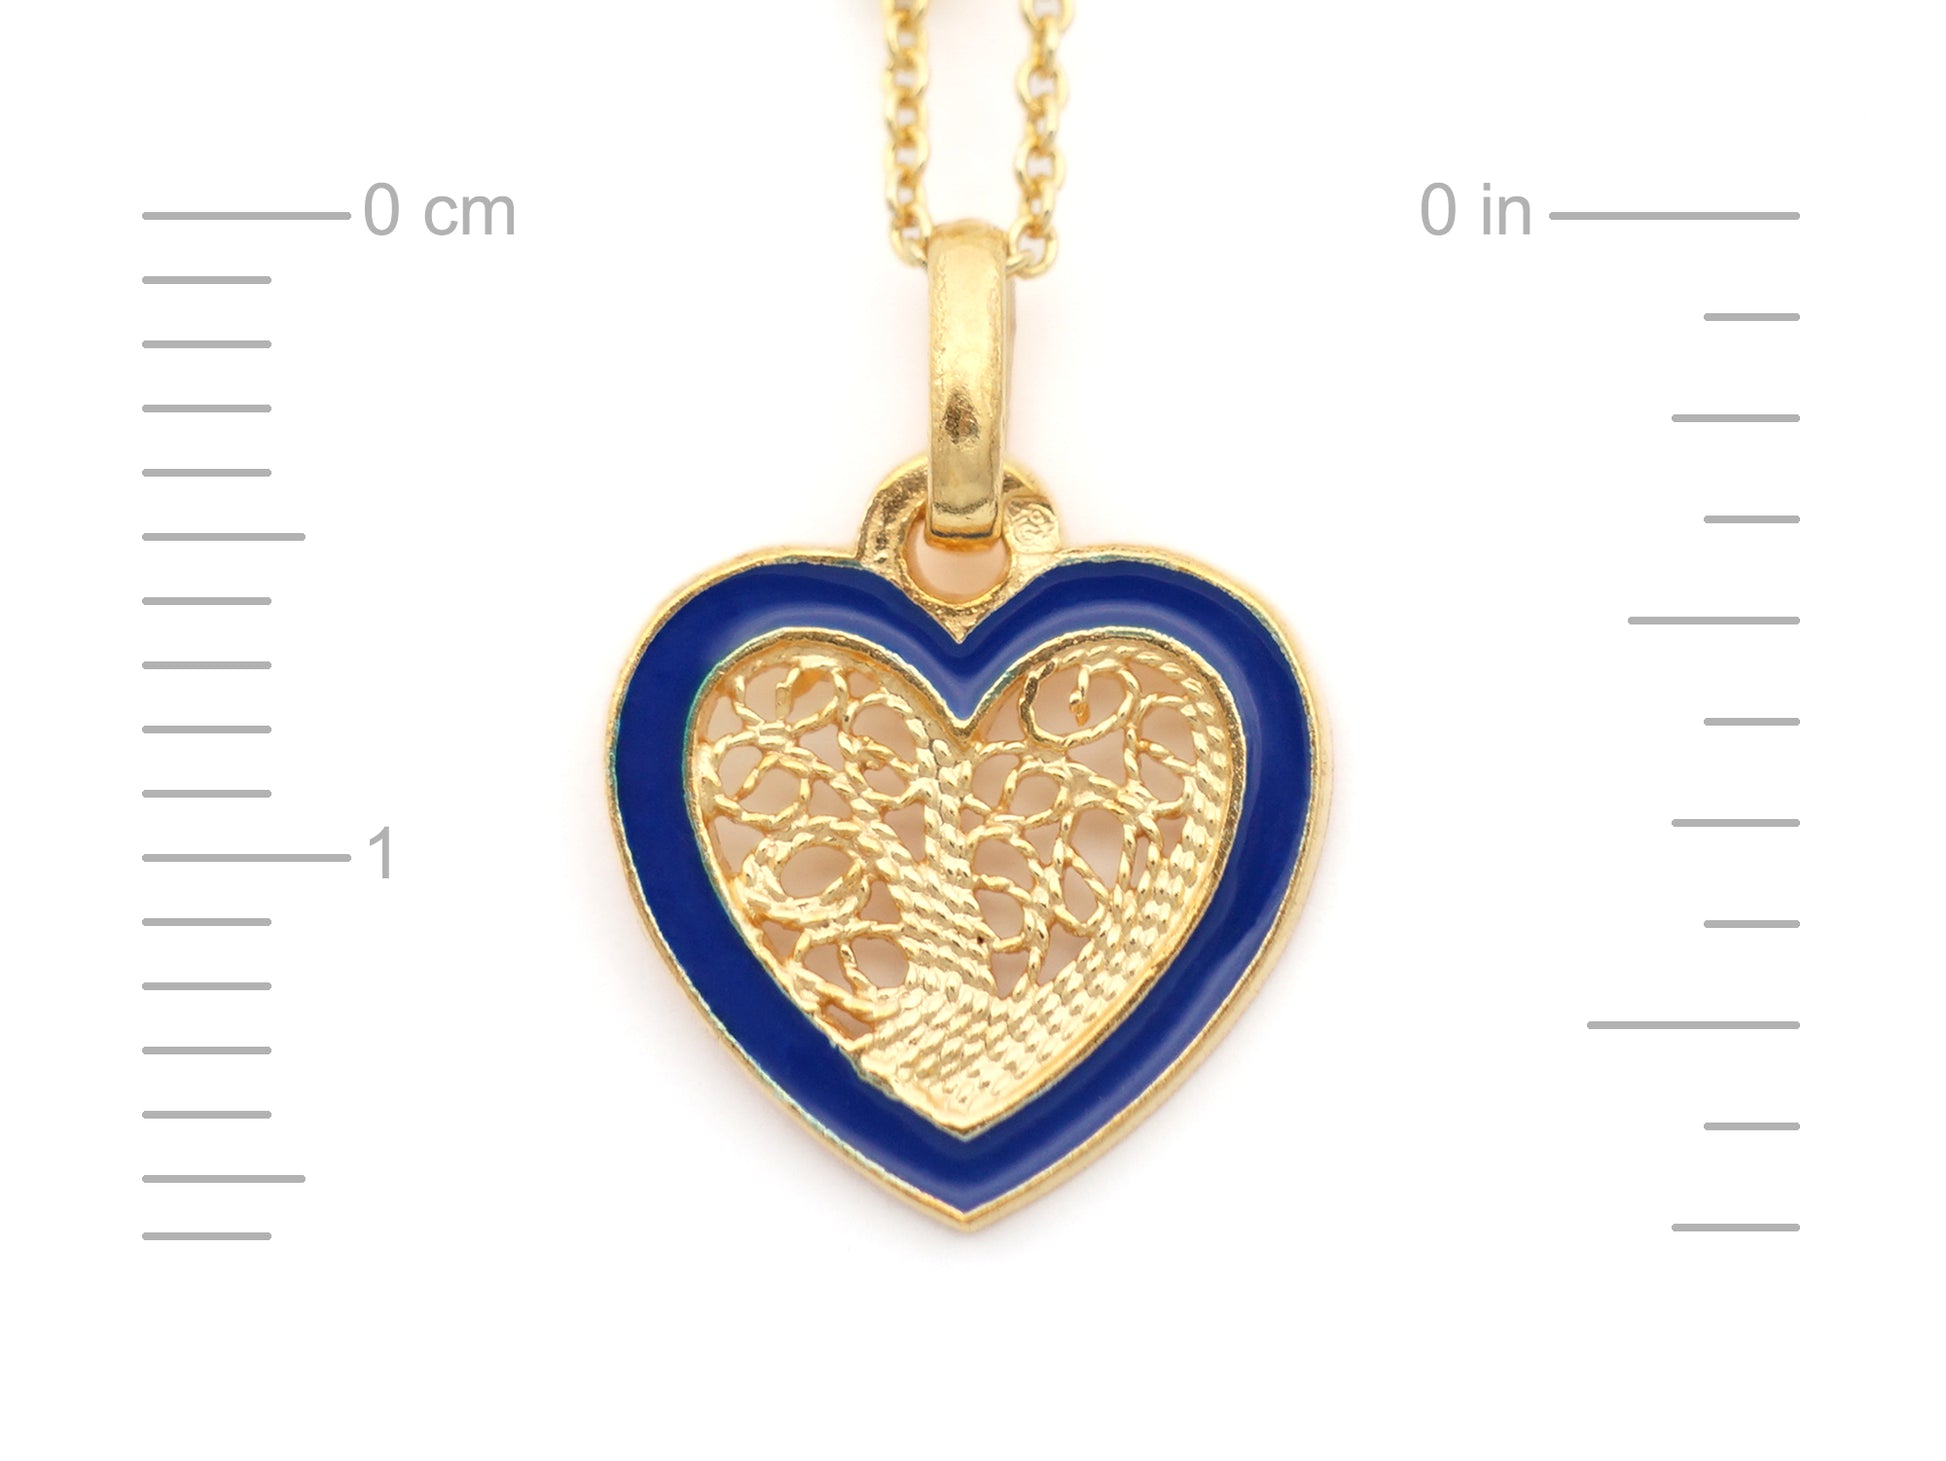 Colar Coração Pequeno Esmalte Azul, Filigrana Portuguesa, Prata de Lei 925 Dourada - Medidas